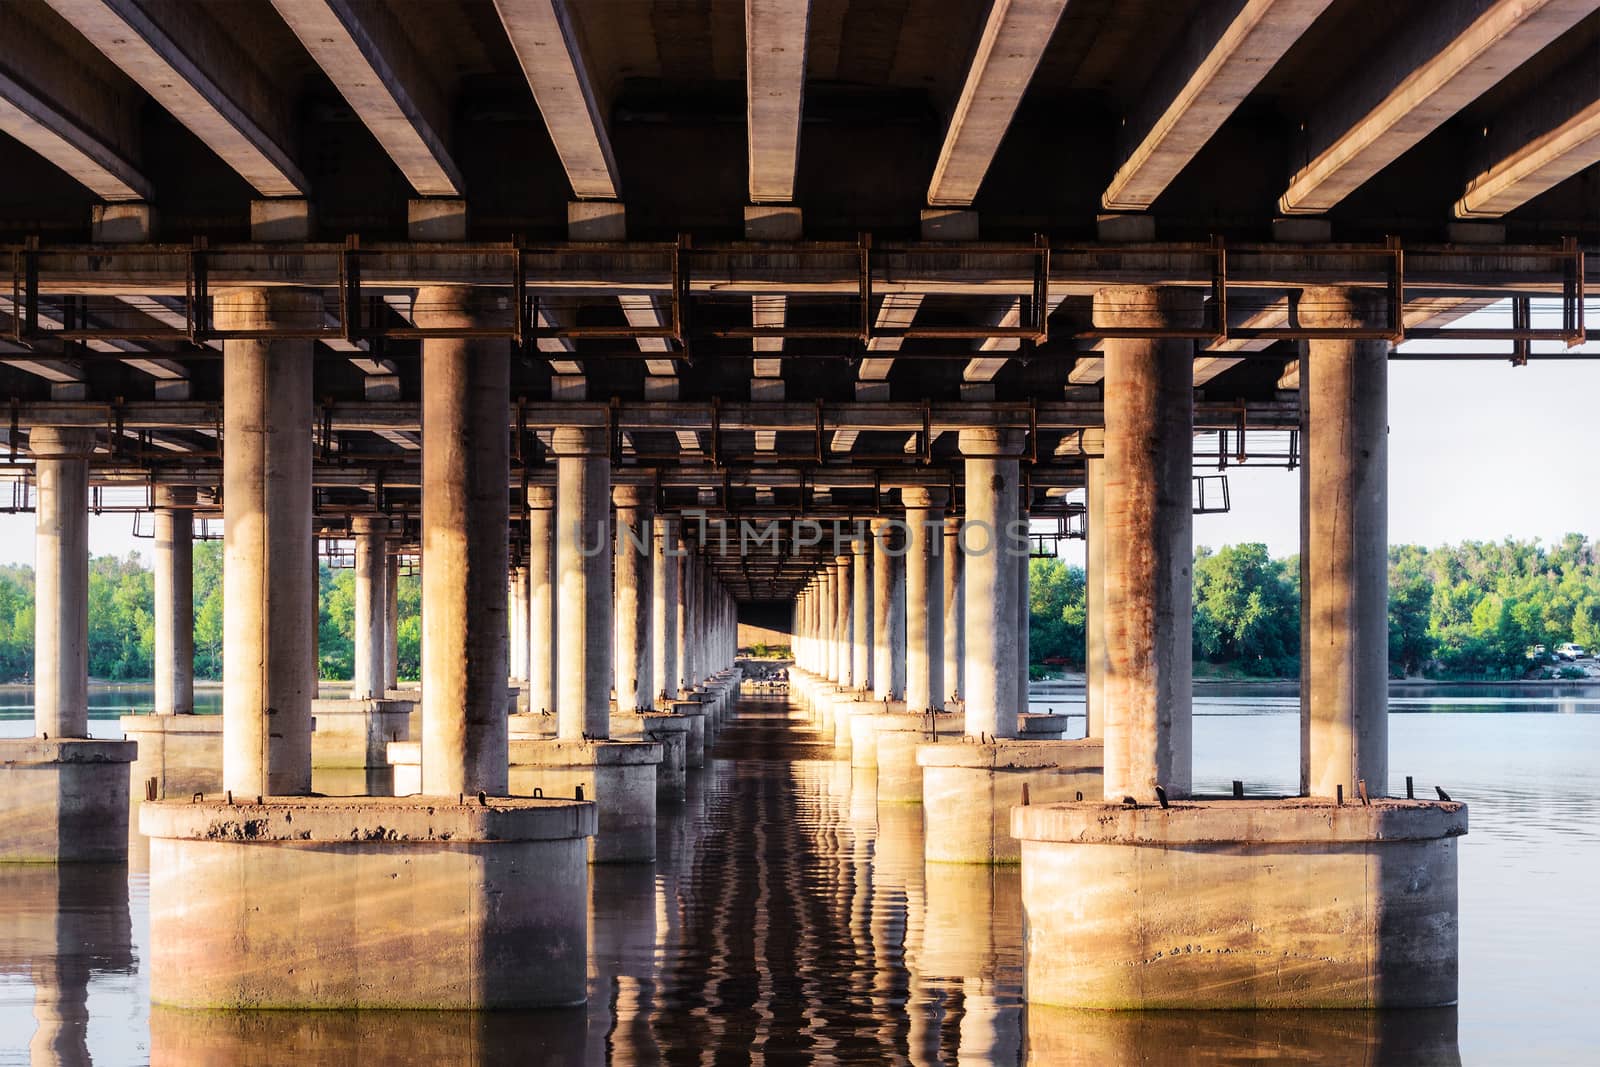 Under a bridge by s96serg